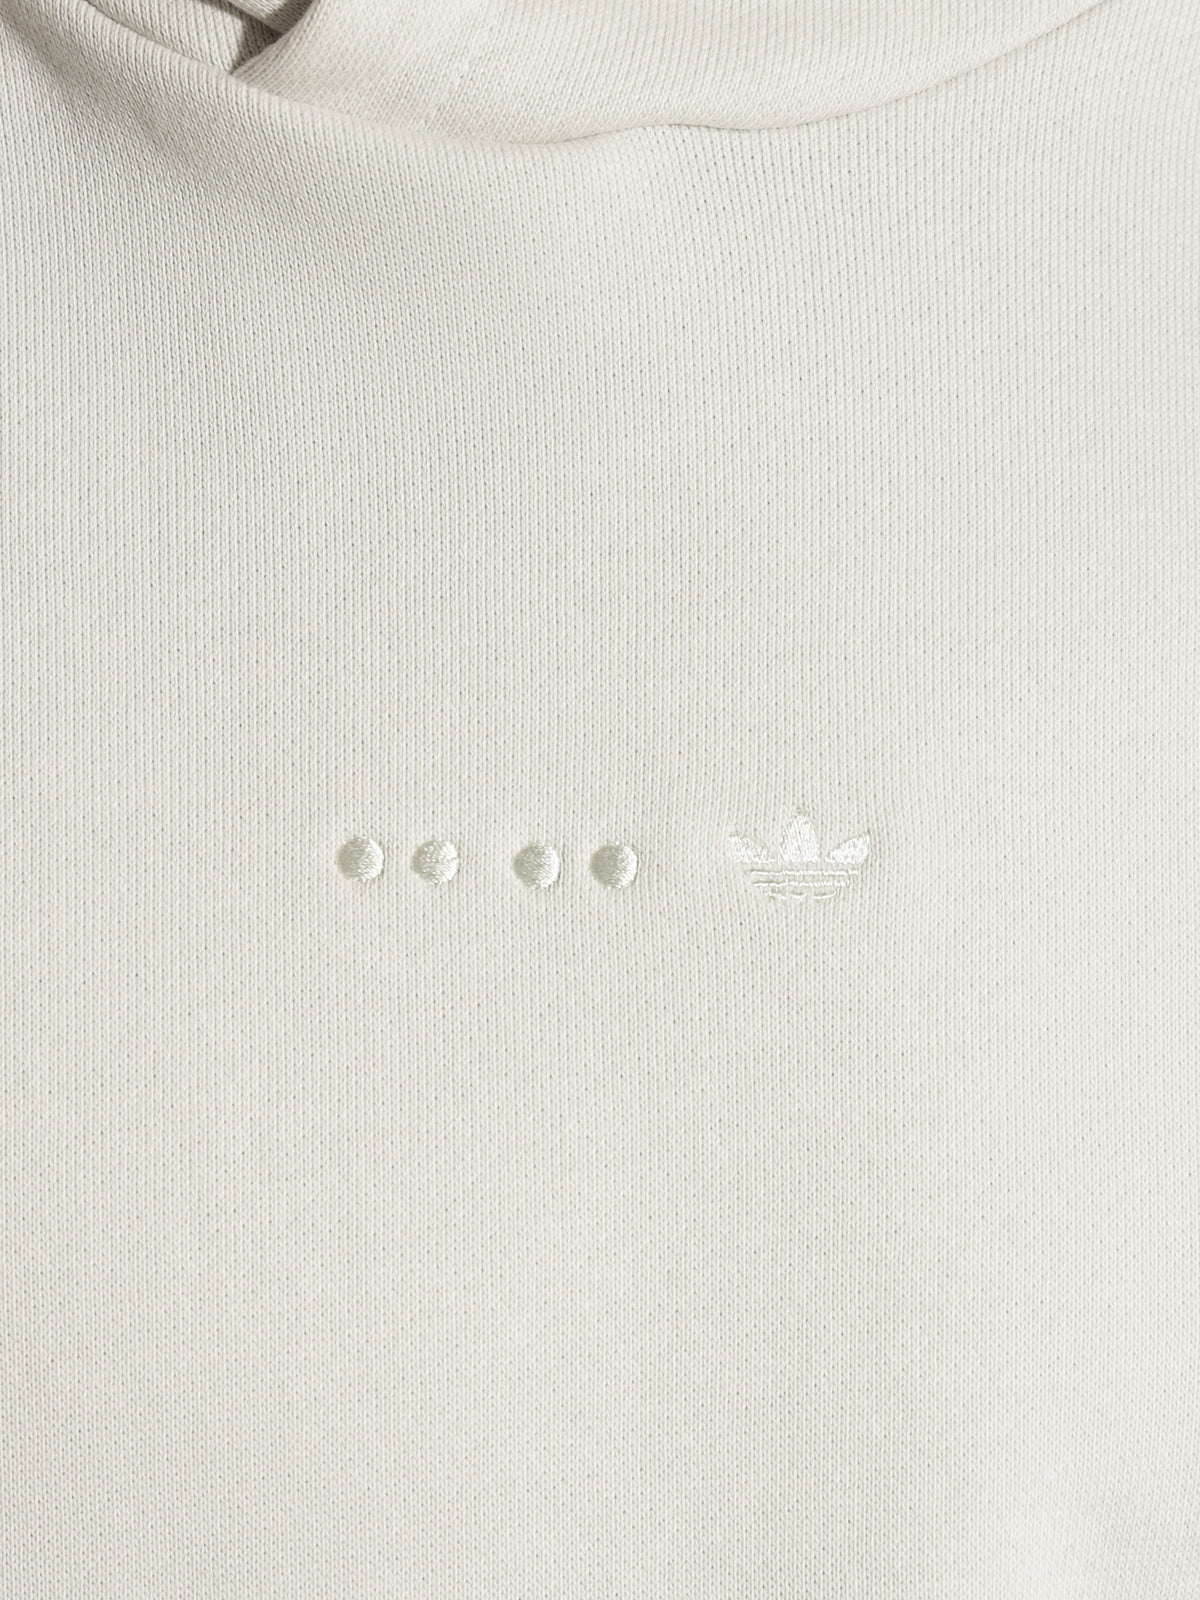 Reveal Ess Logo Hoodie in Orbit Grey